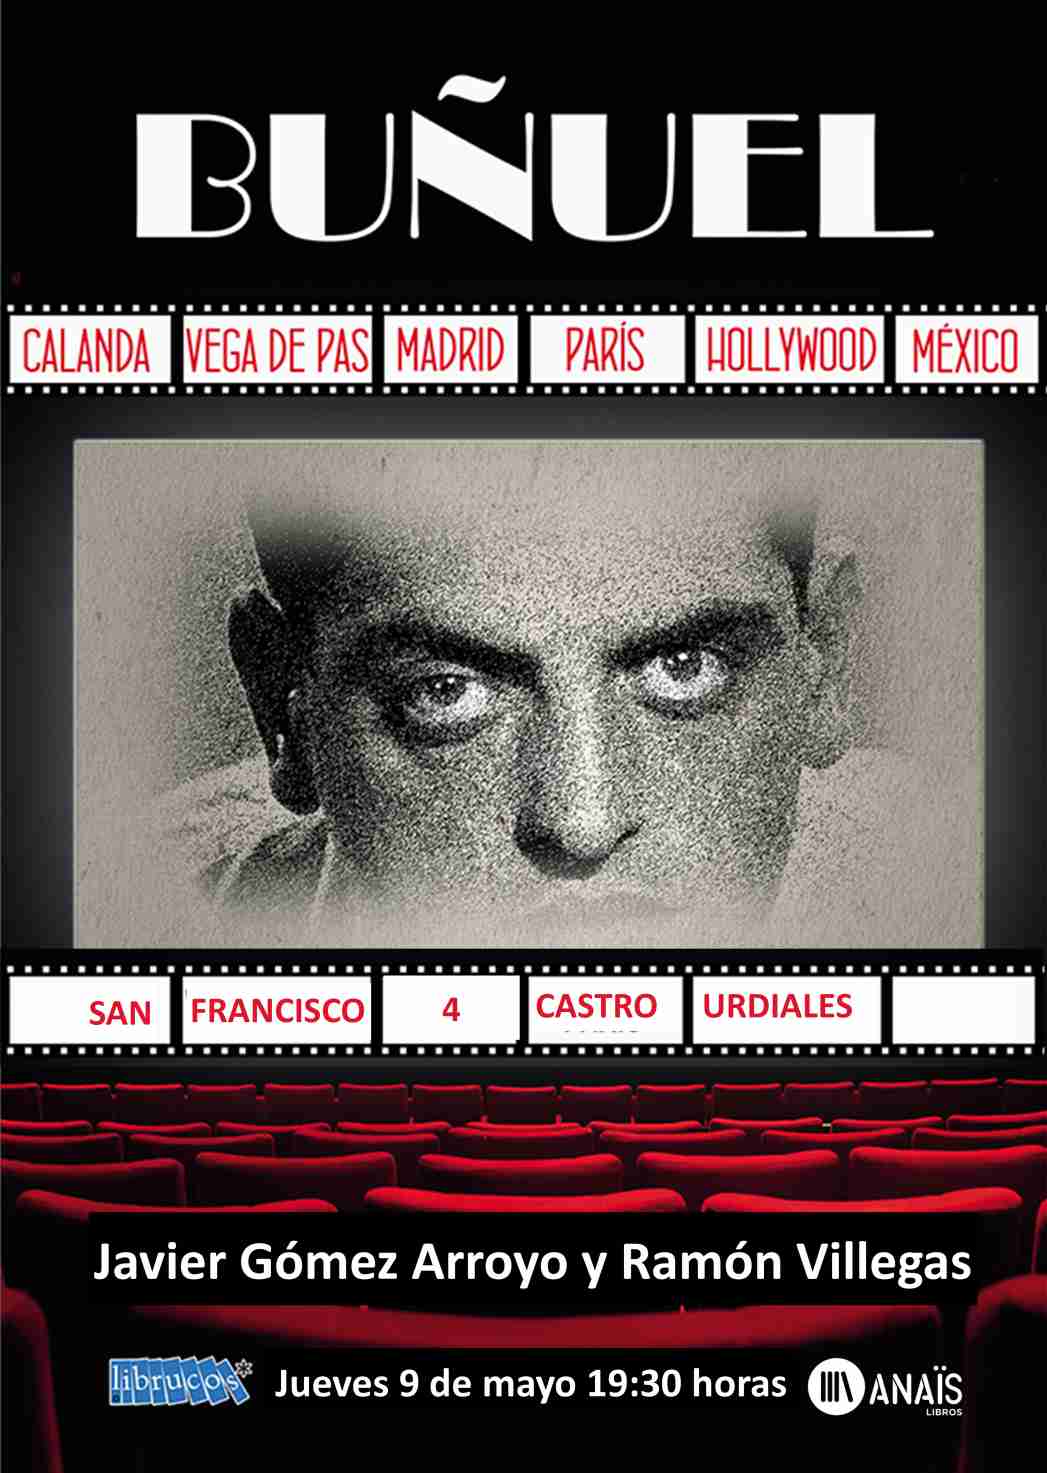 Presentación del libro: "Buñuel"